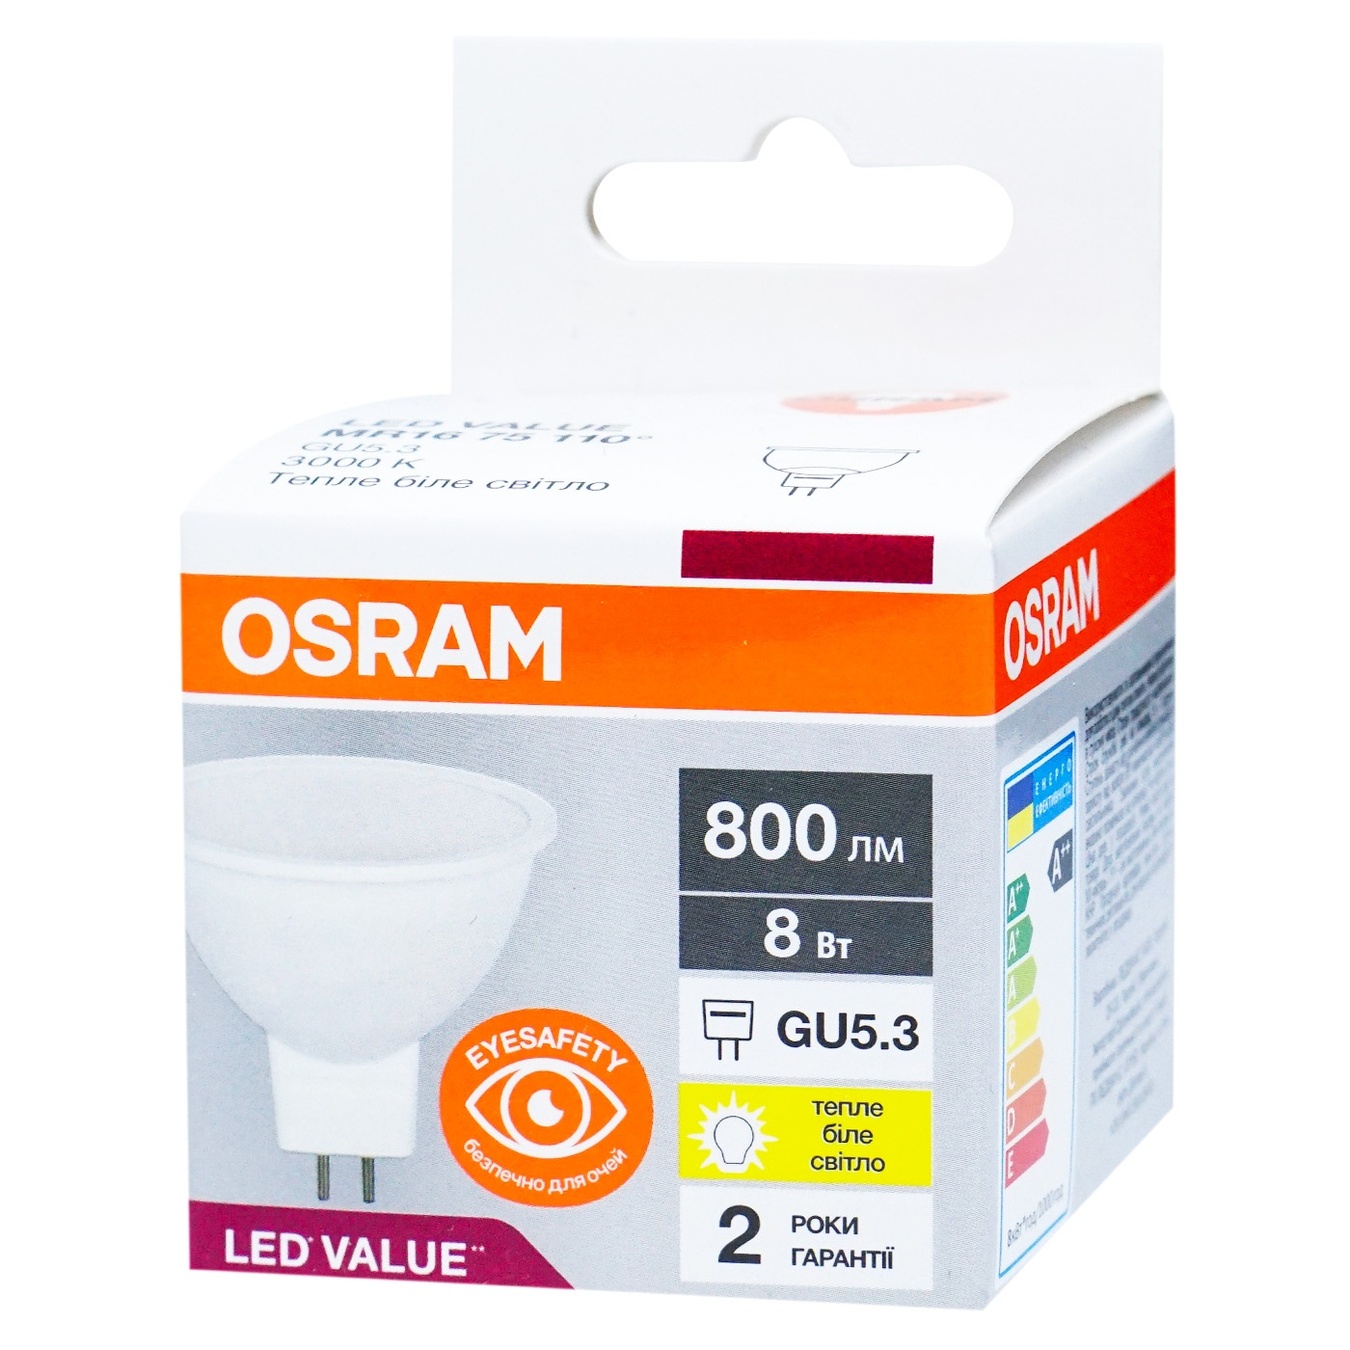 LED lamp LED Osram LVMR1675 8W/830 230V GU5.3 10X1 UA